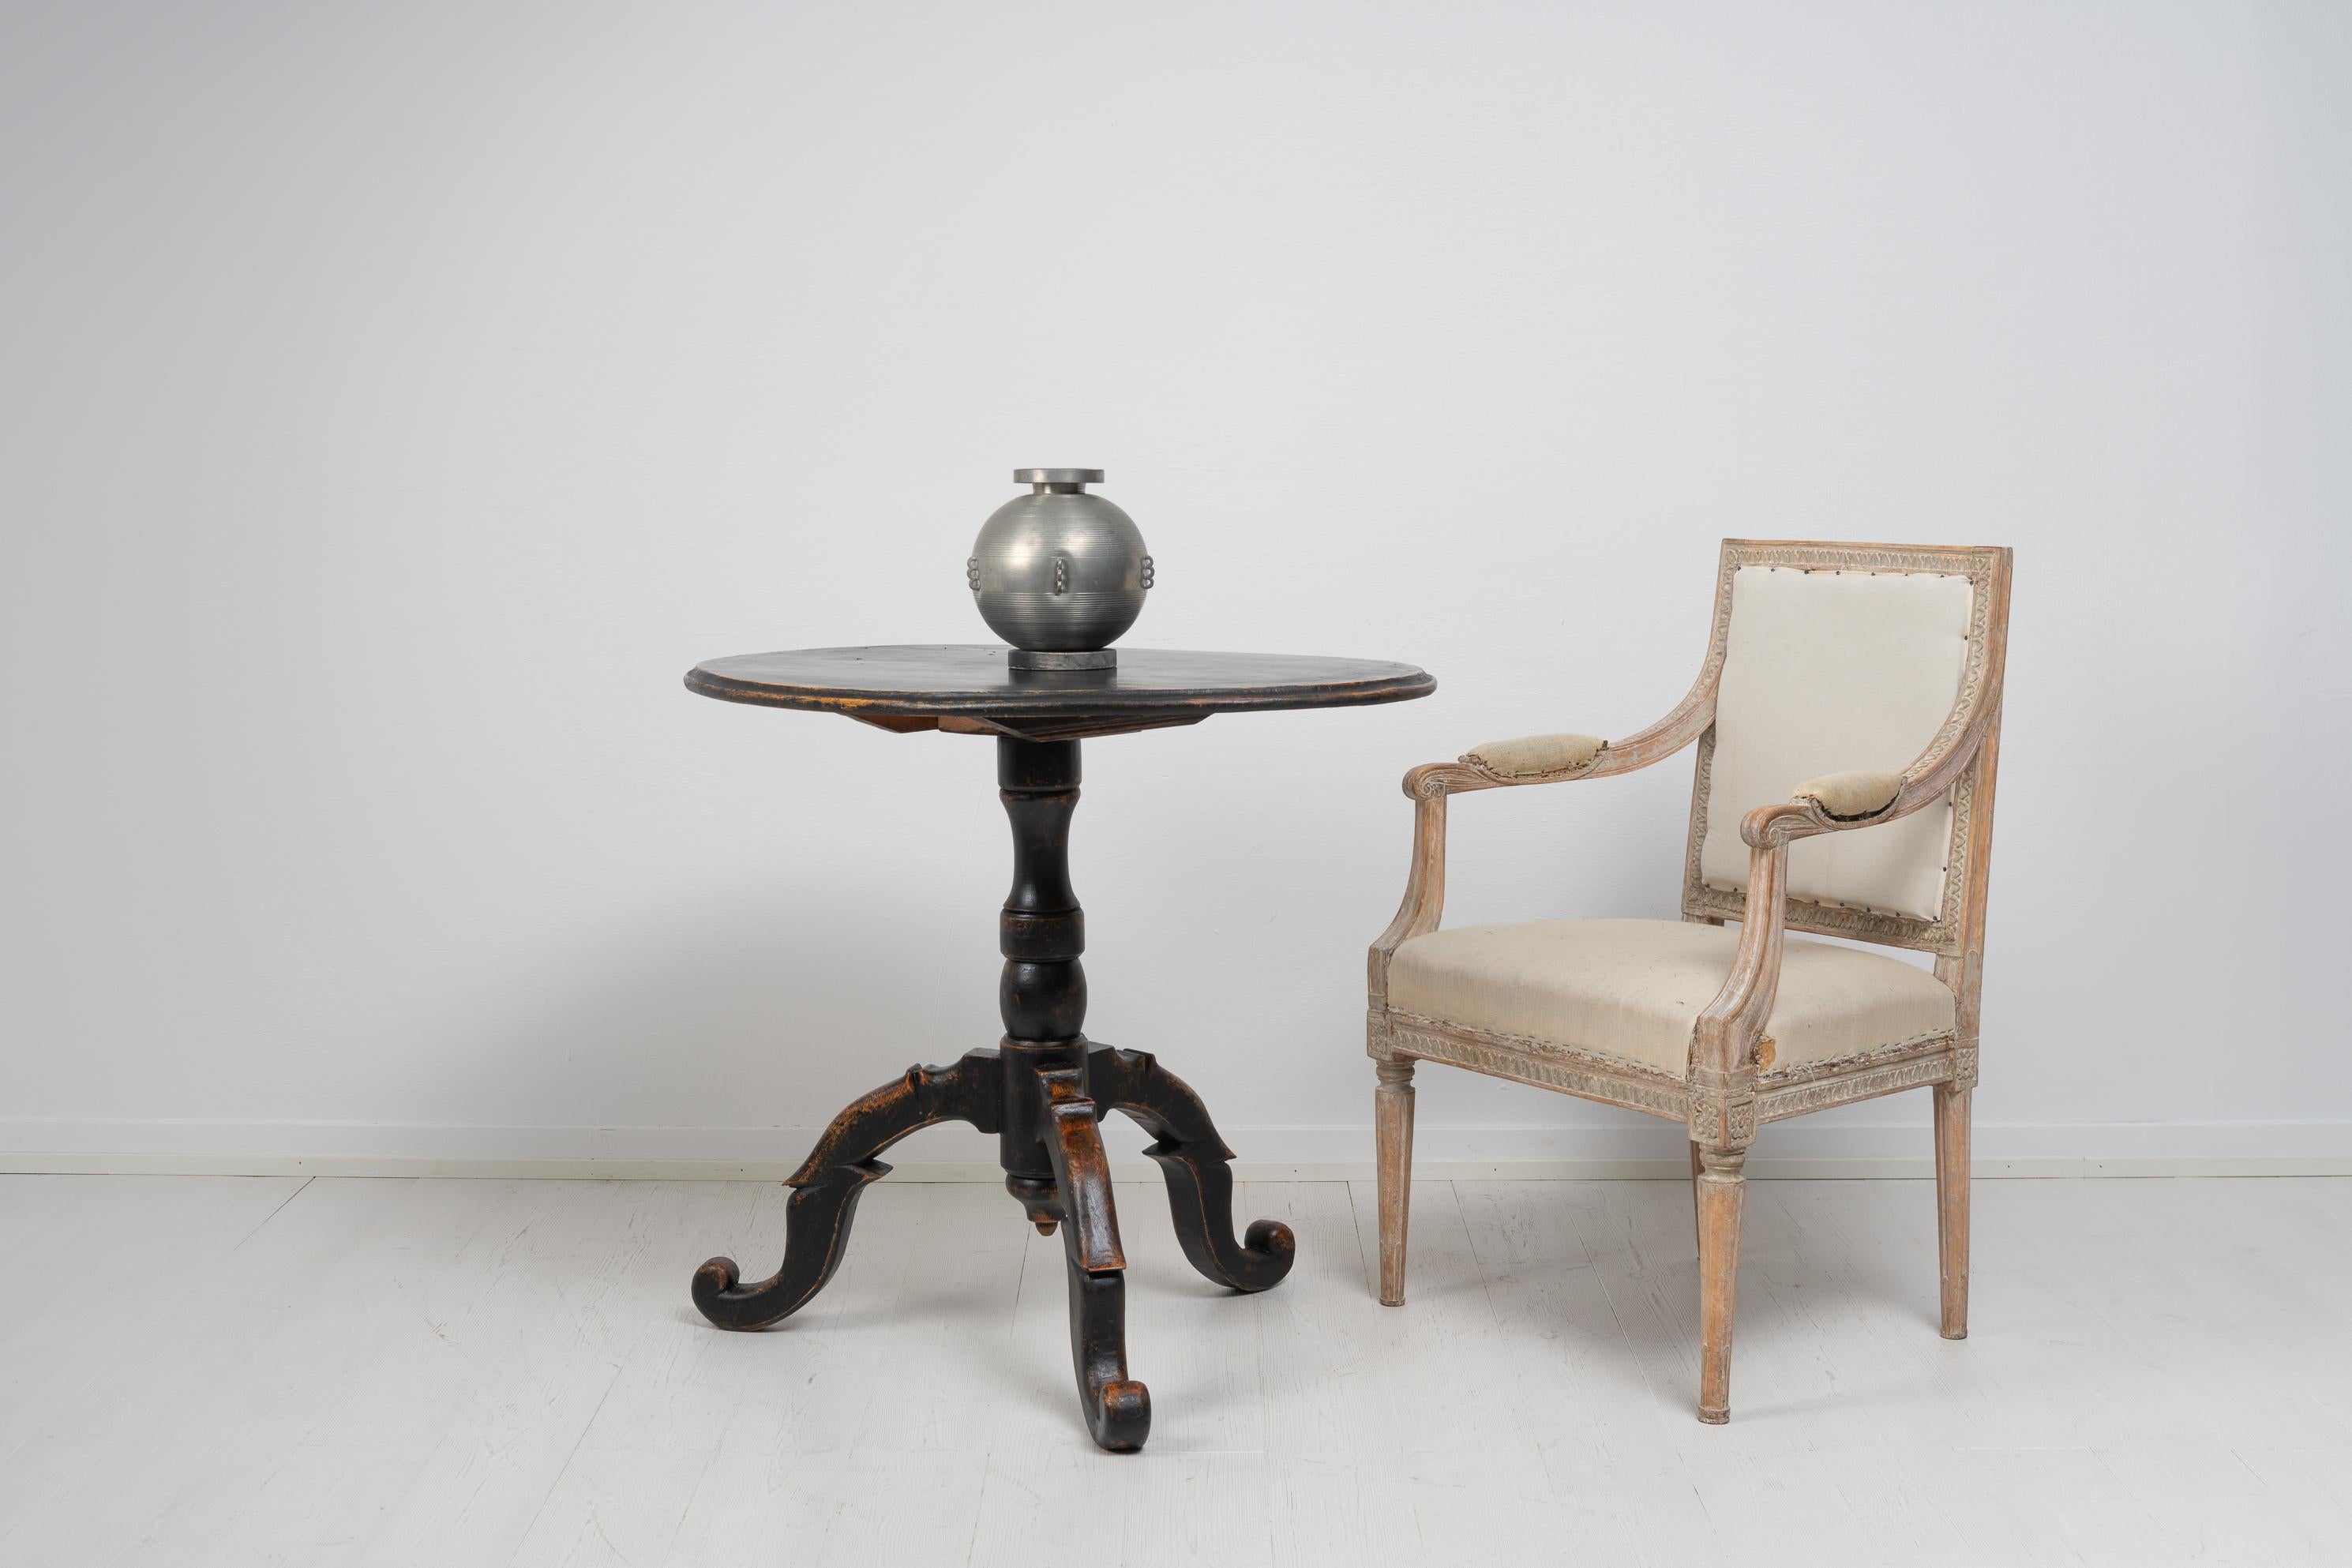 Table suédoise à plateau basculant de couleur noire fabriquée au milieu du XIXe siècle, vers 1860. La table est peinte avec une peinture noire qui s'est dégradée et le bois qui se trouve en dessous brille par endroits. La détresse donne également